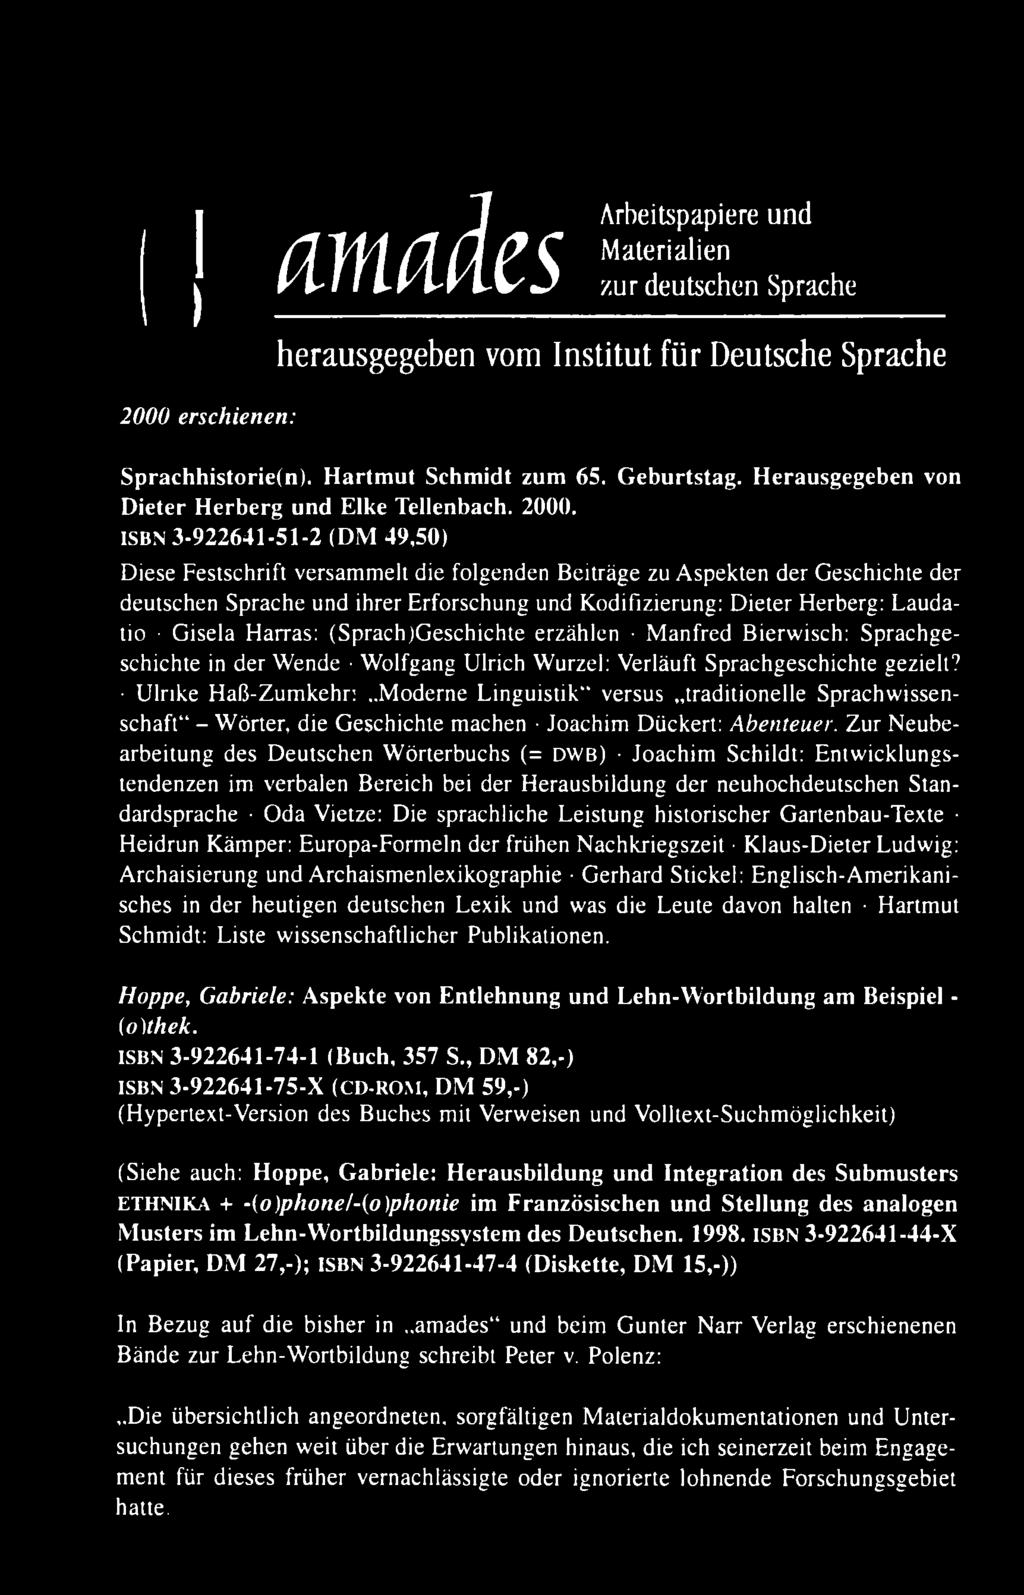 ISBN 3-922641-51-2 (DM 49,50) Diese Festschrift versammelt die folgenden Beiträge zu Aspekten der Geschichte der deutschen Sprache und ihrer Erforschung und Kodifizierung: D ieter Herberg: L audatio